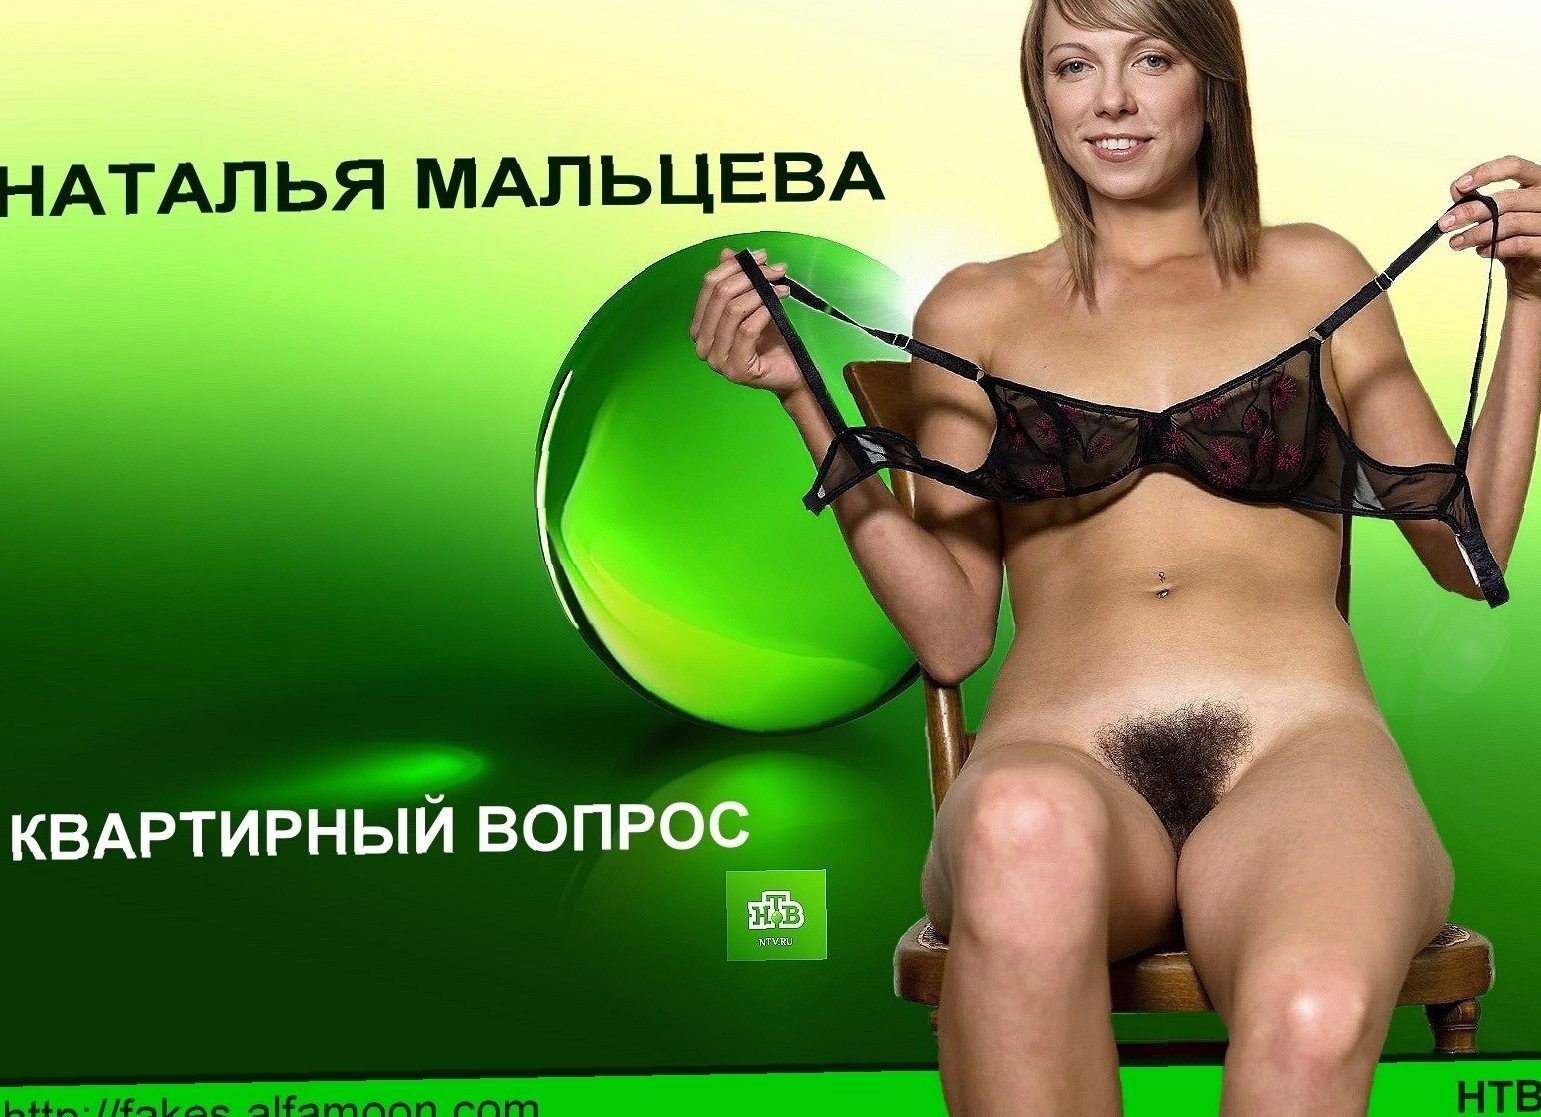 Порно каналы в россией фото 18